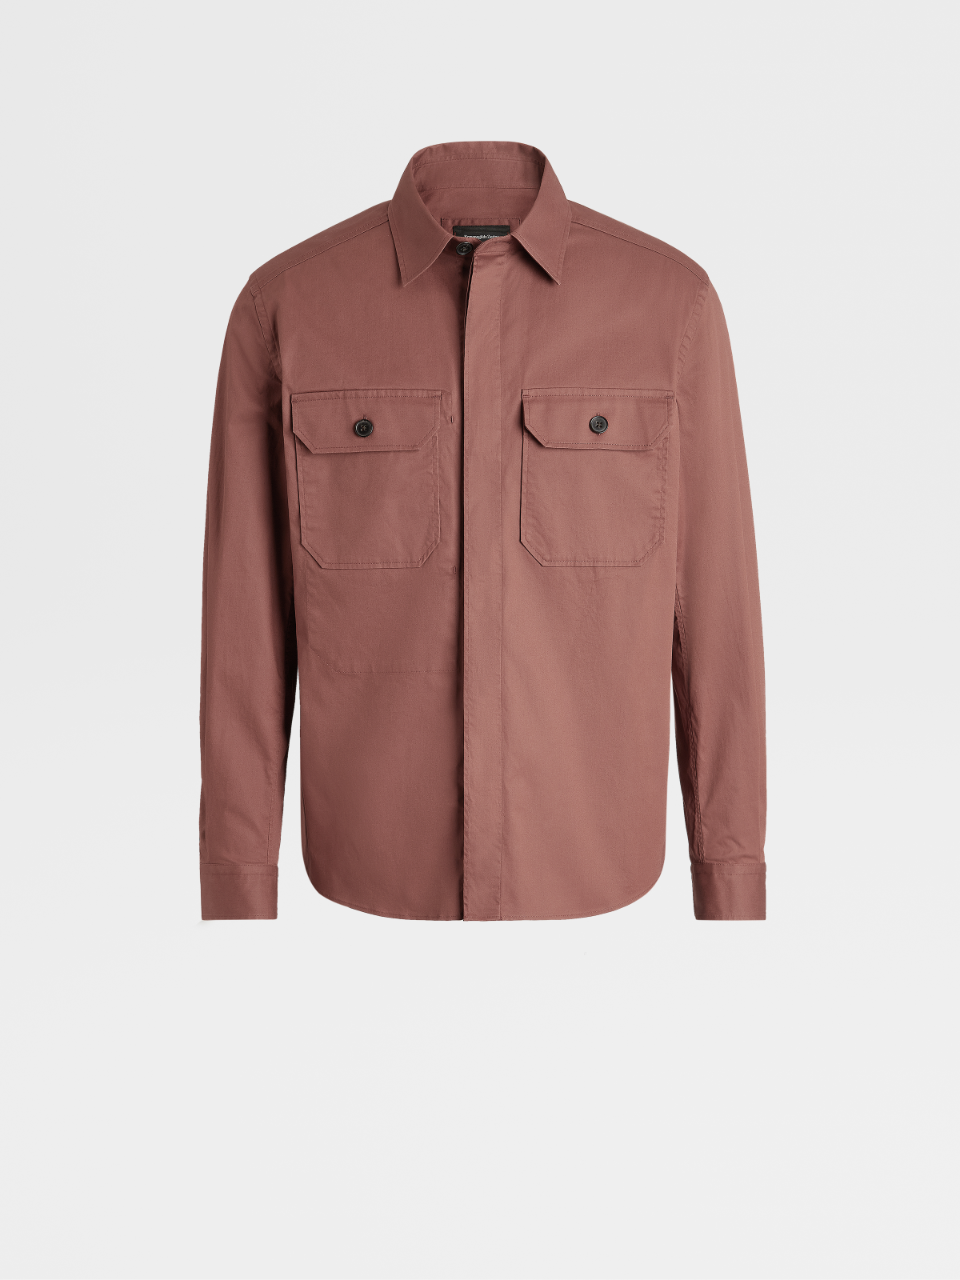 Cognac Premium Cotton Overshirt